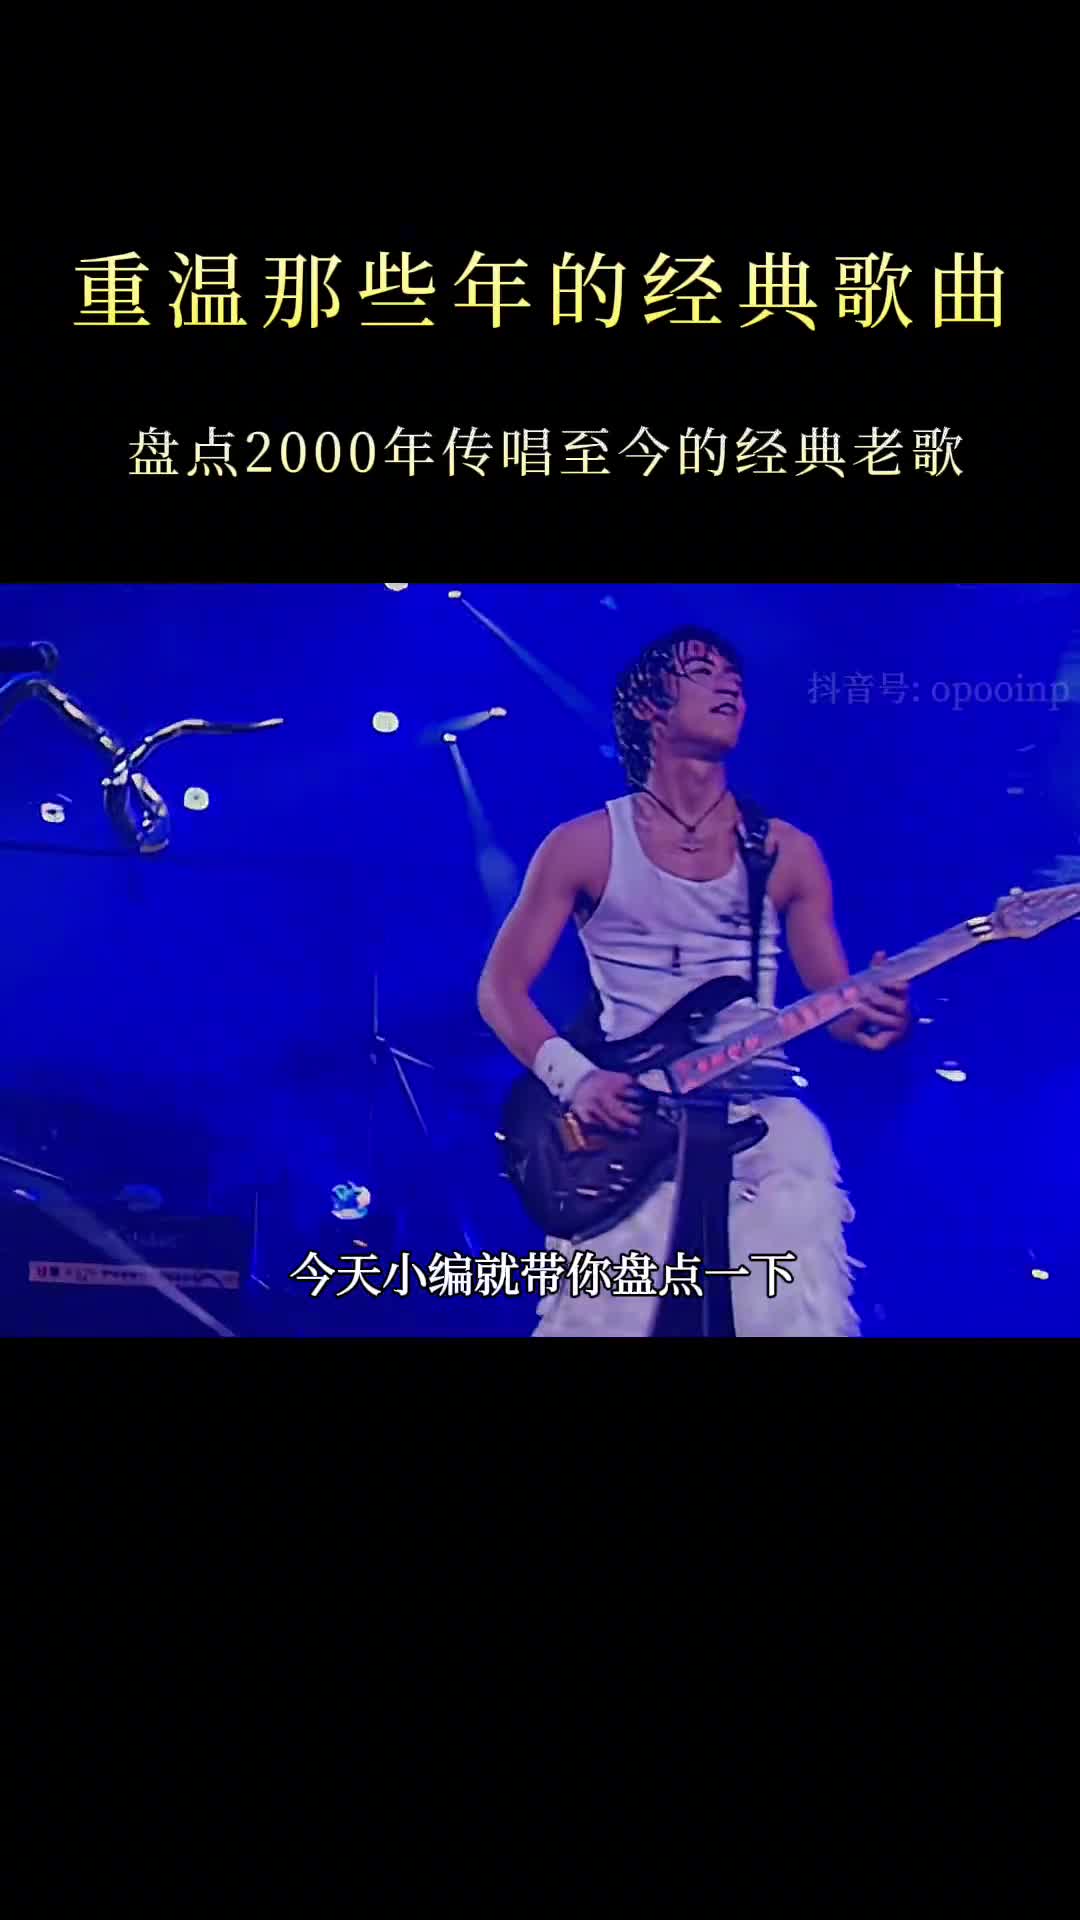 2000年的华语乐坛“疯狂”到什么地步，首首都是传唱度爆边的歌曲 #经典老歌 #热门音乐